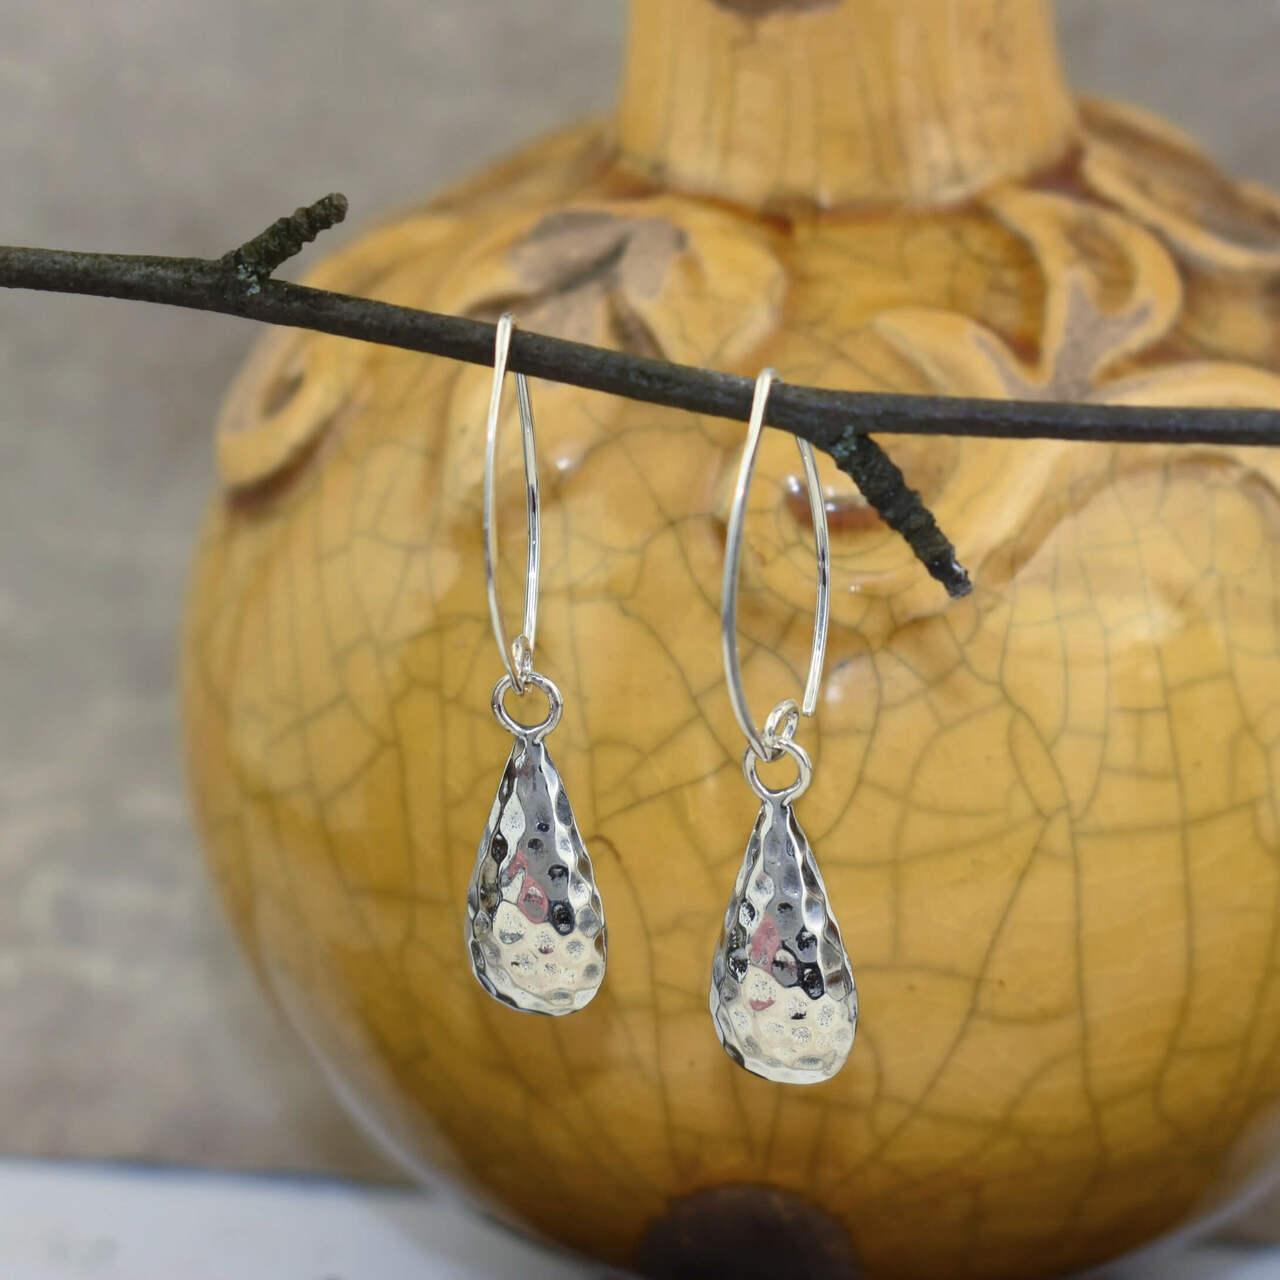 Sterling silver teardrop shaped earrings on v-hook wires